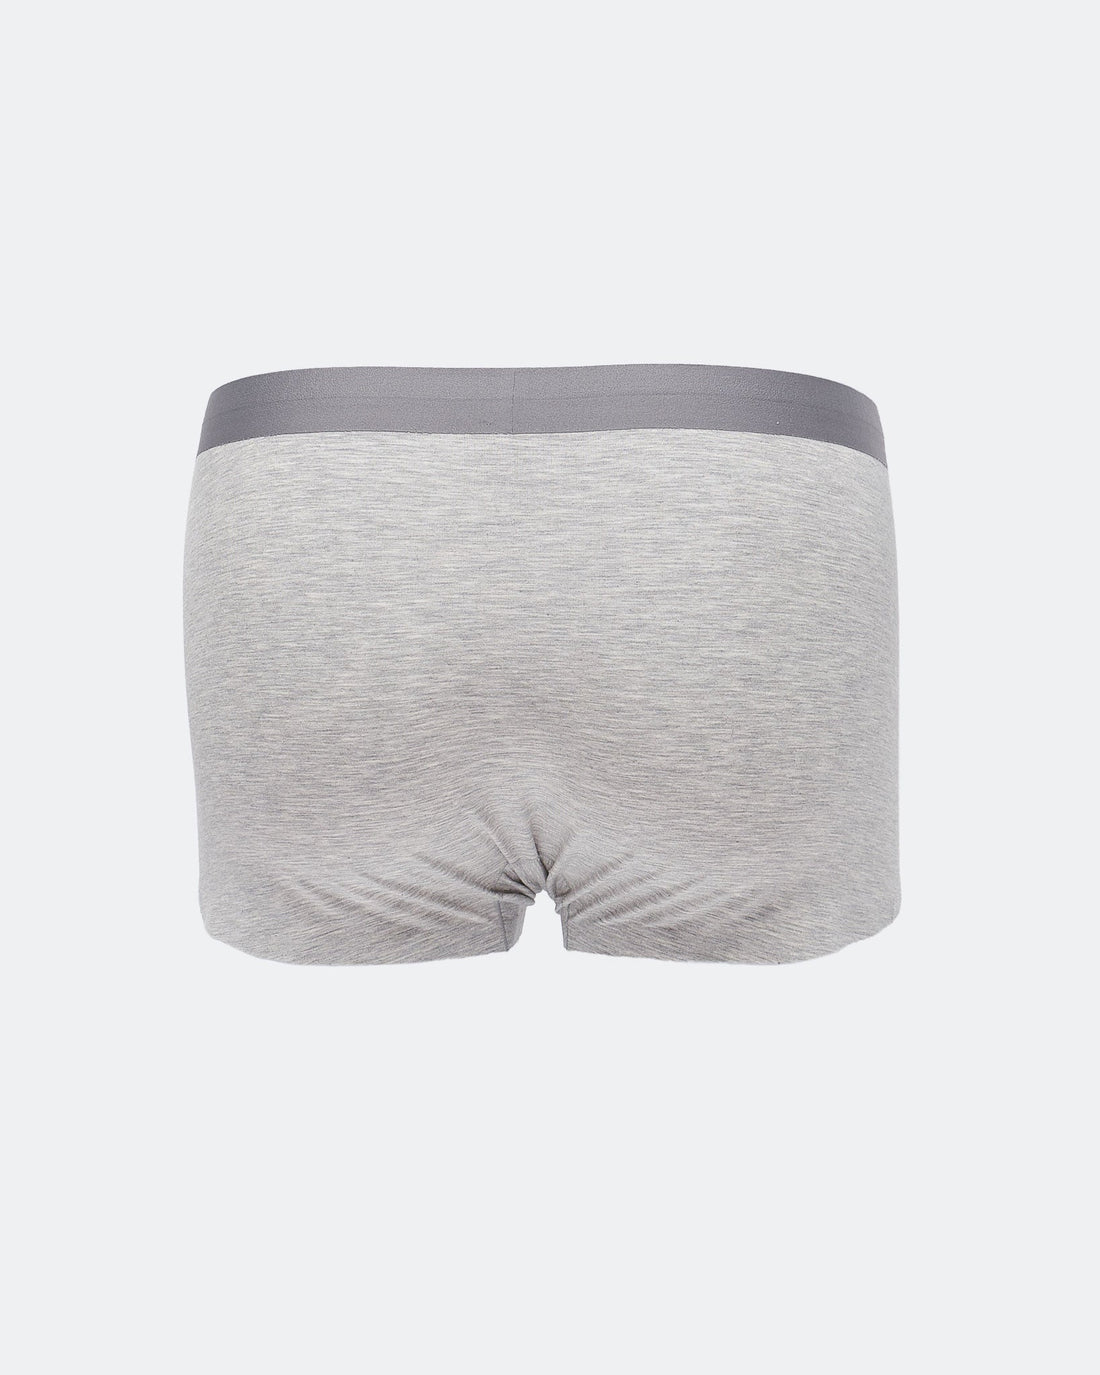 MOI OUTFIT-CK Waistband Men Underwear 6.90